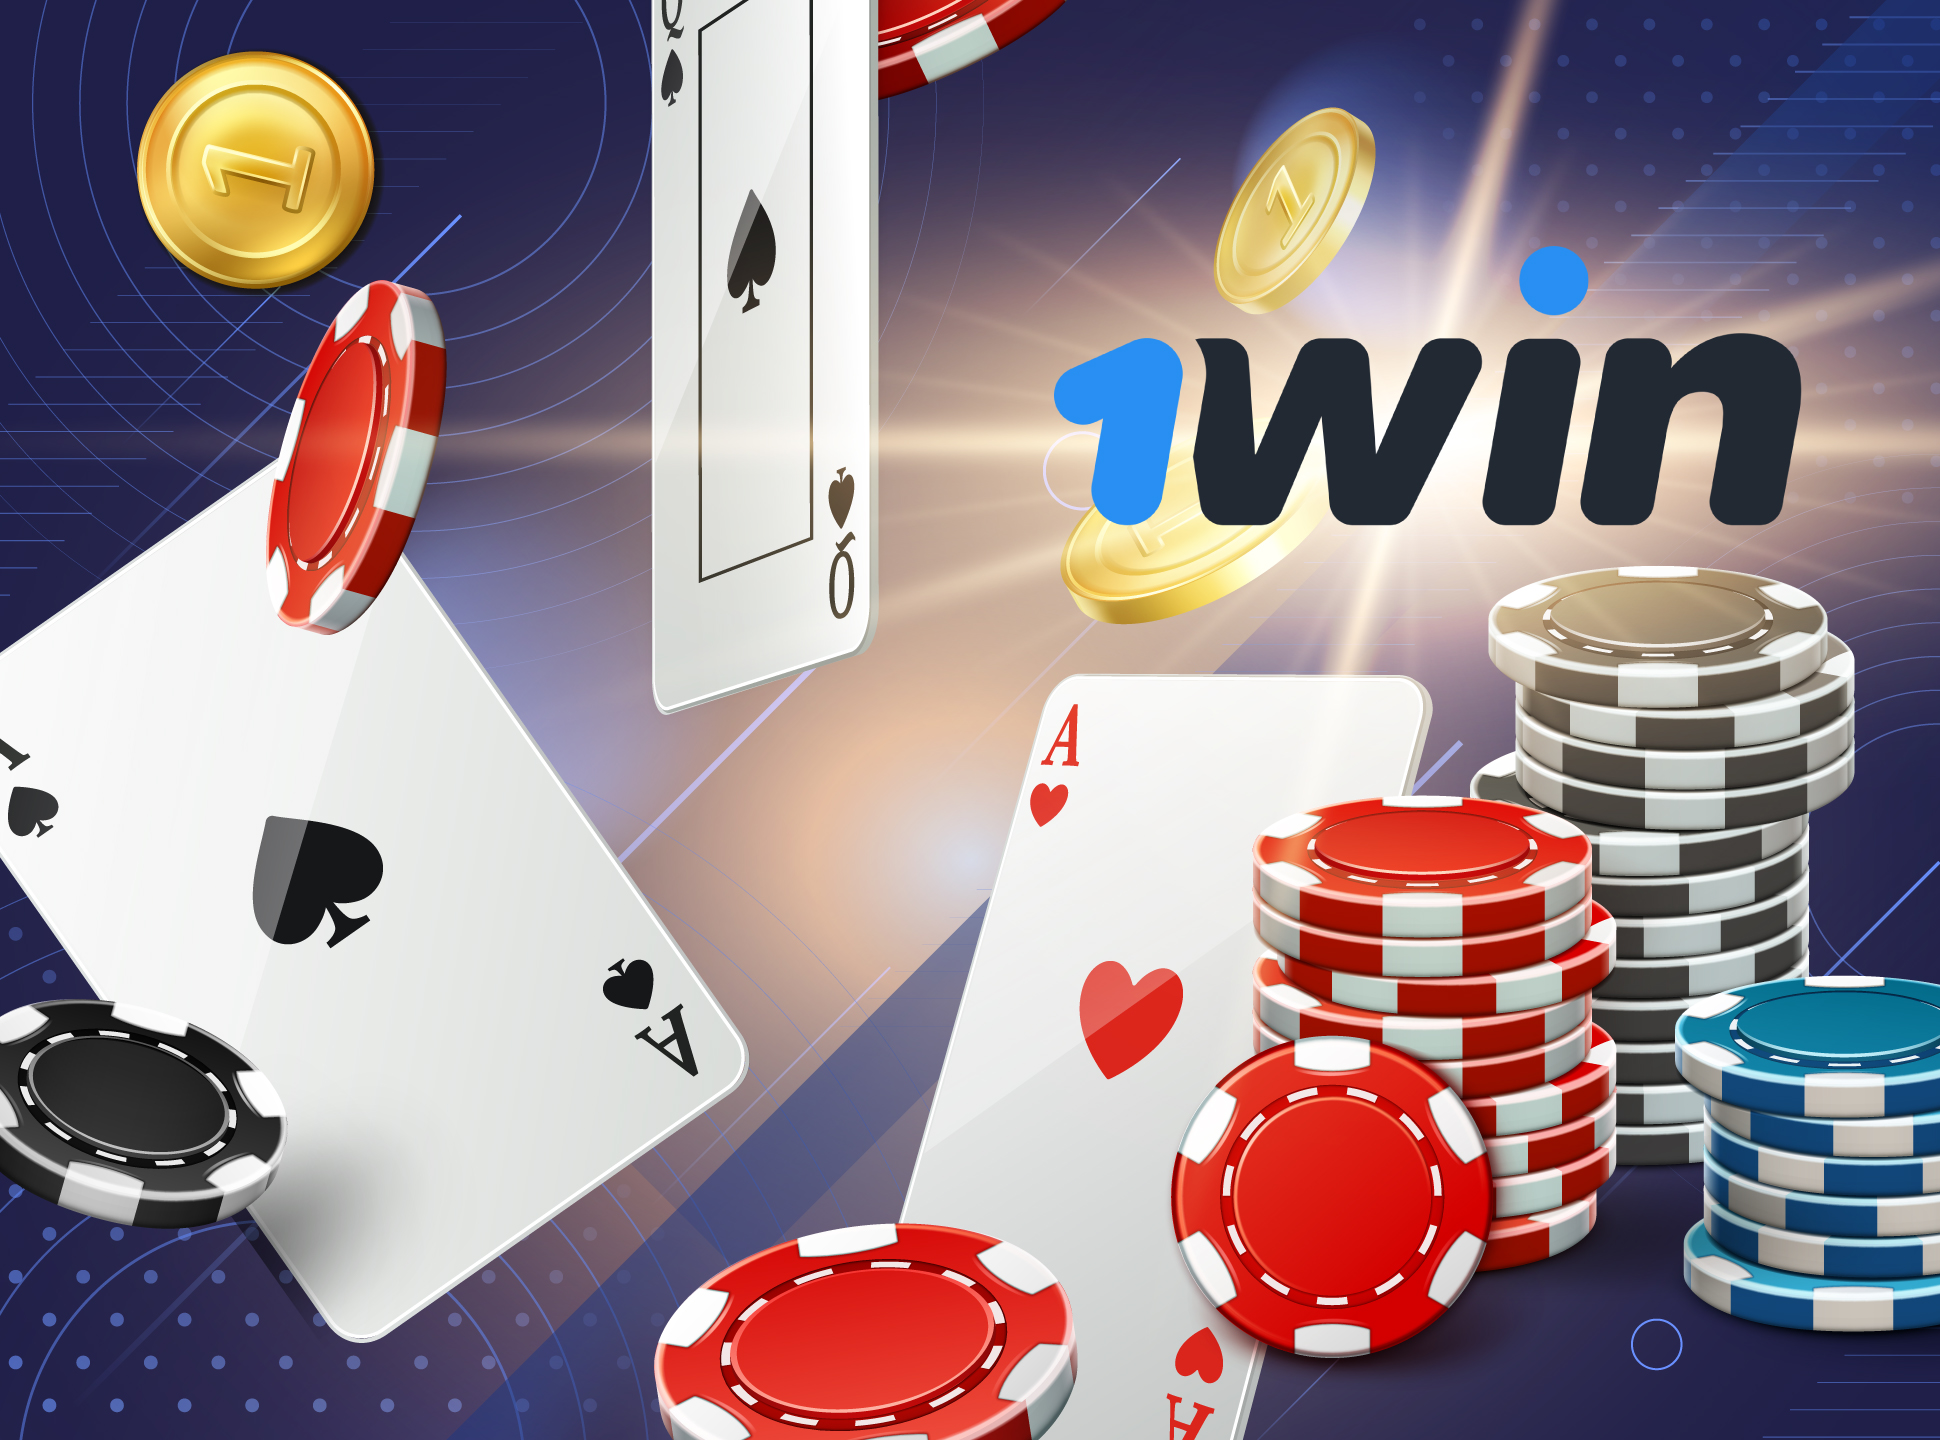 1win não só tem um escritório de apostas, mas também um cassino online.